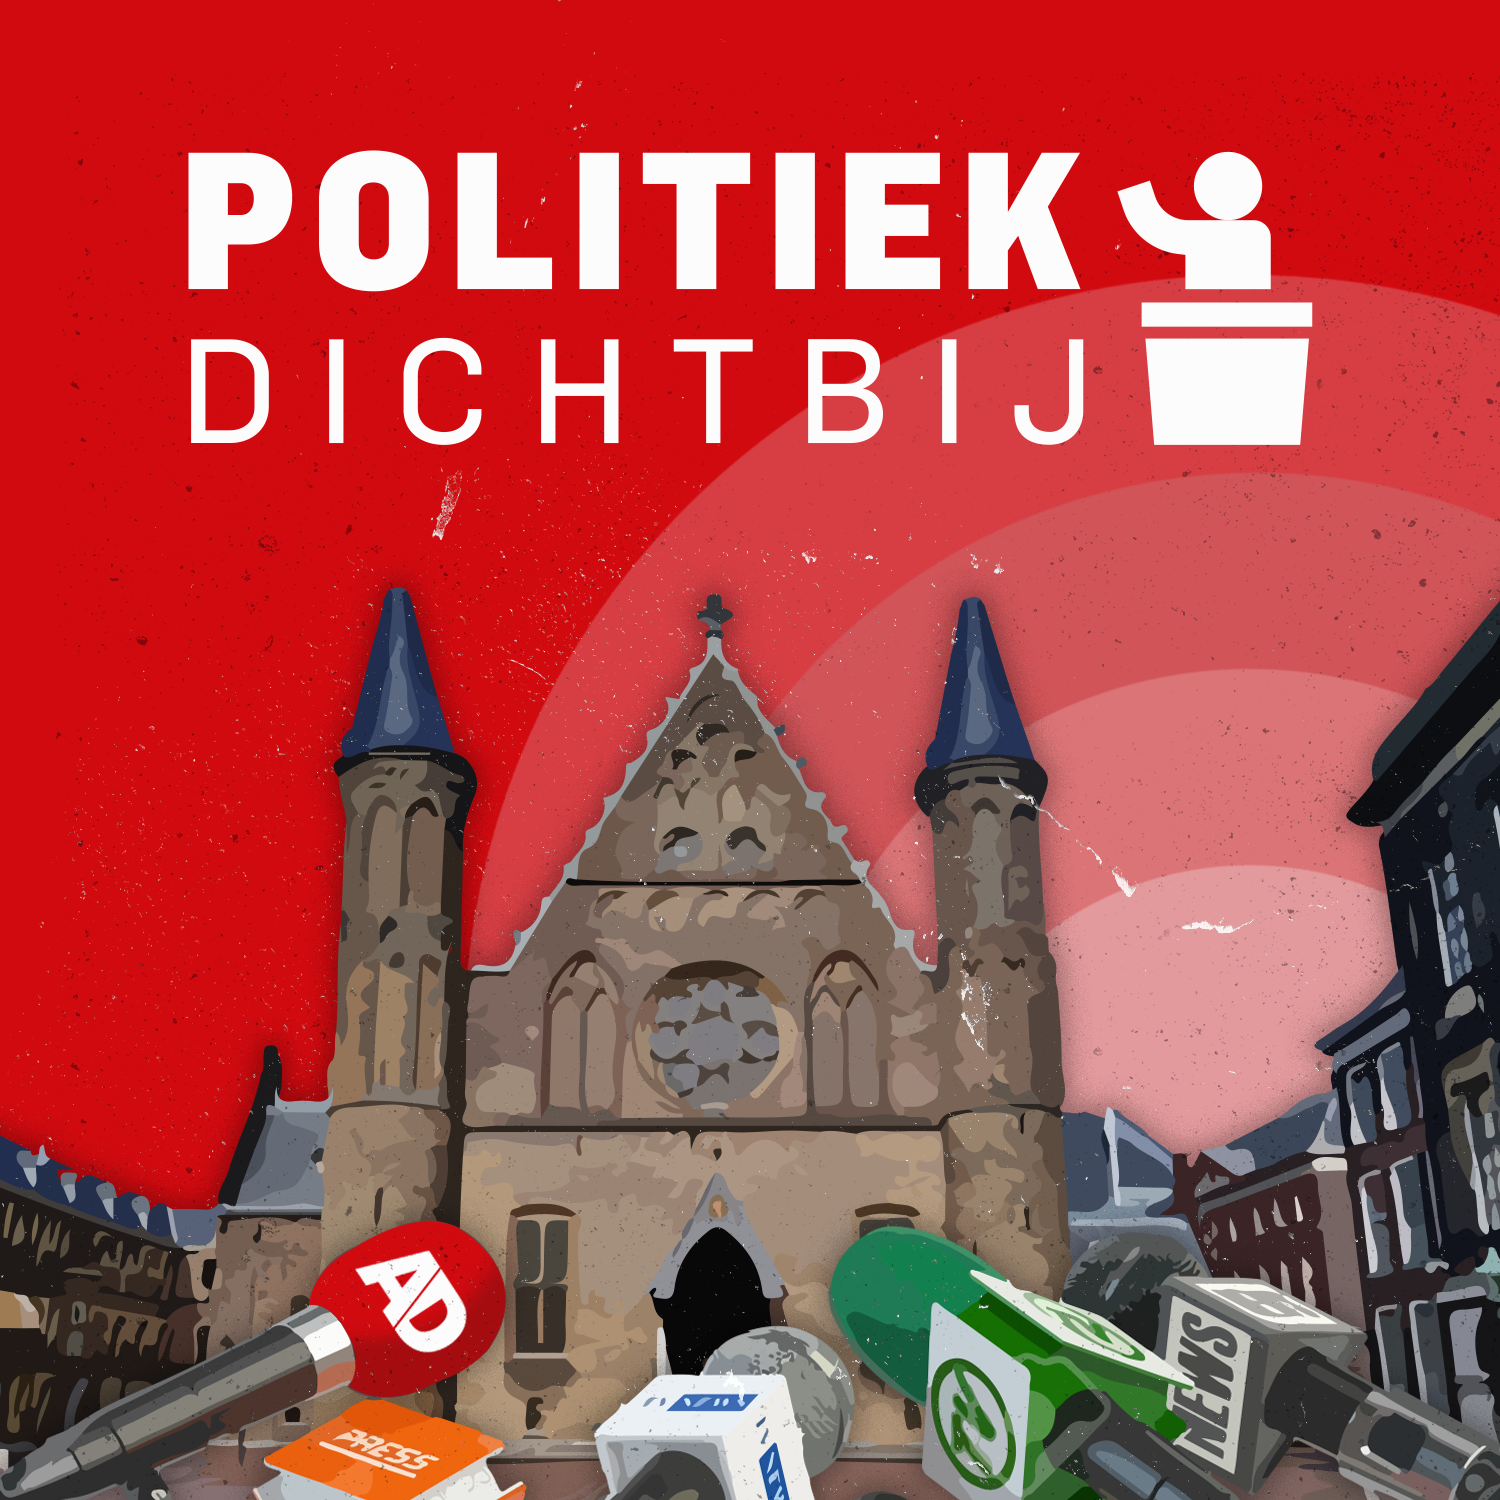 Uitglijders en blunders in eerste 100 dagen kabinet, maar Rutte staat weer